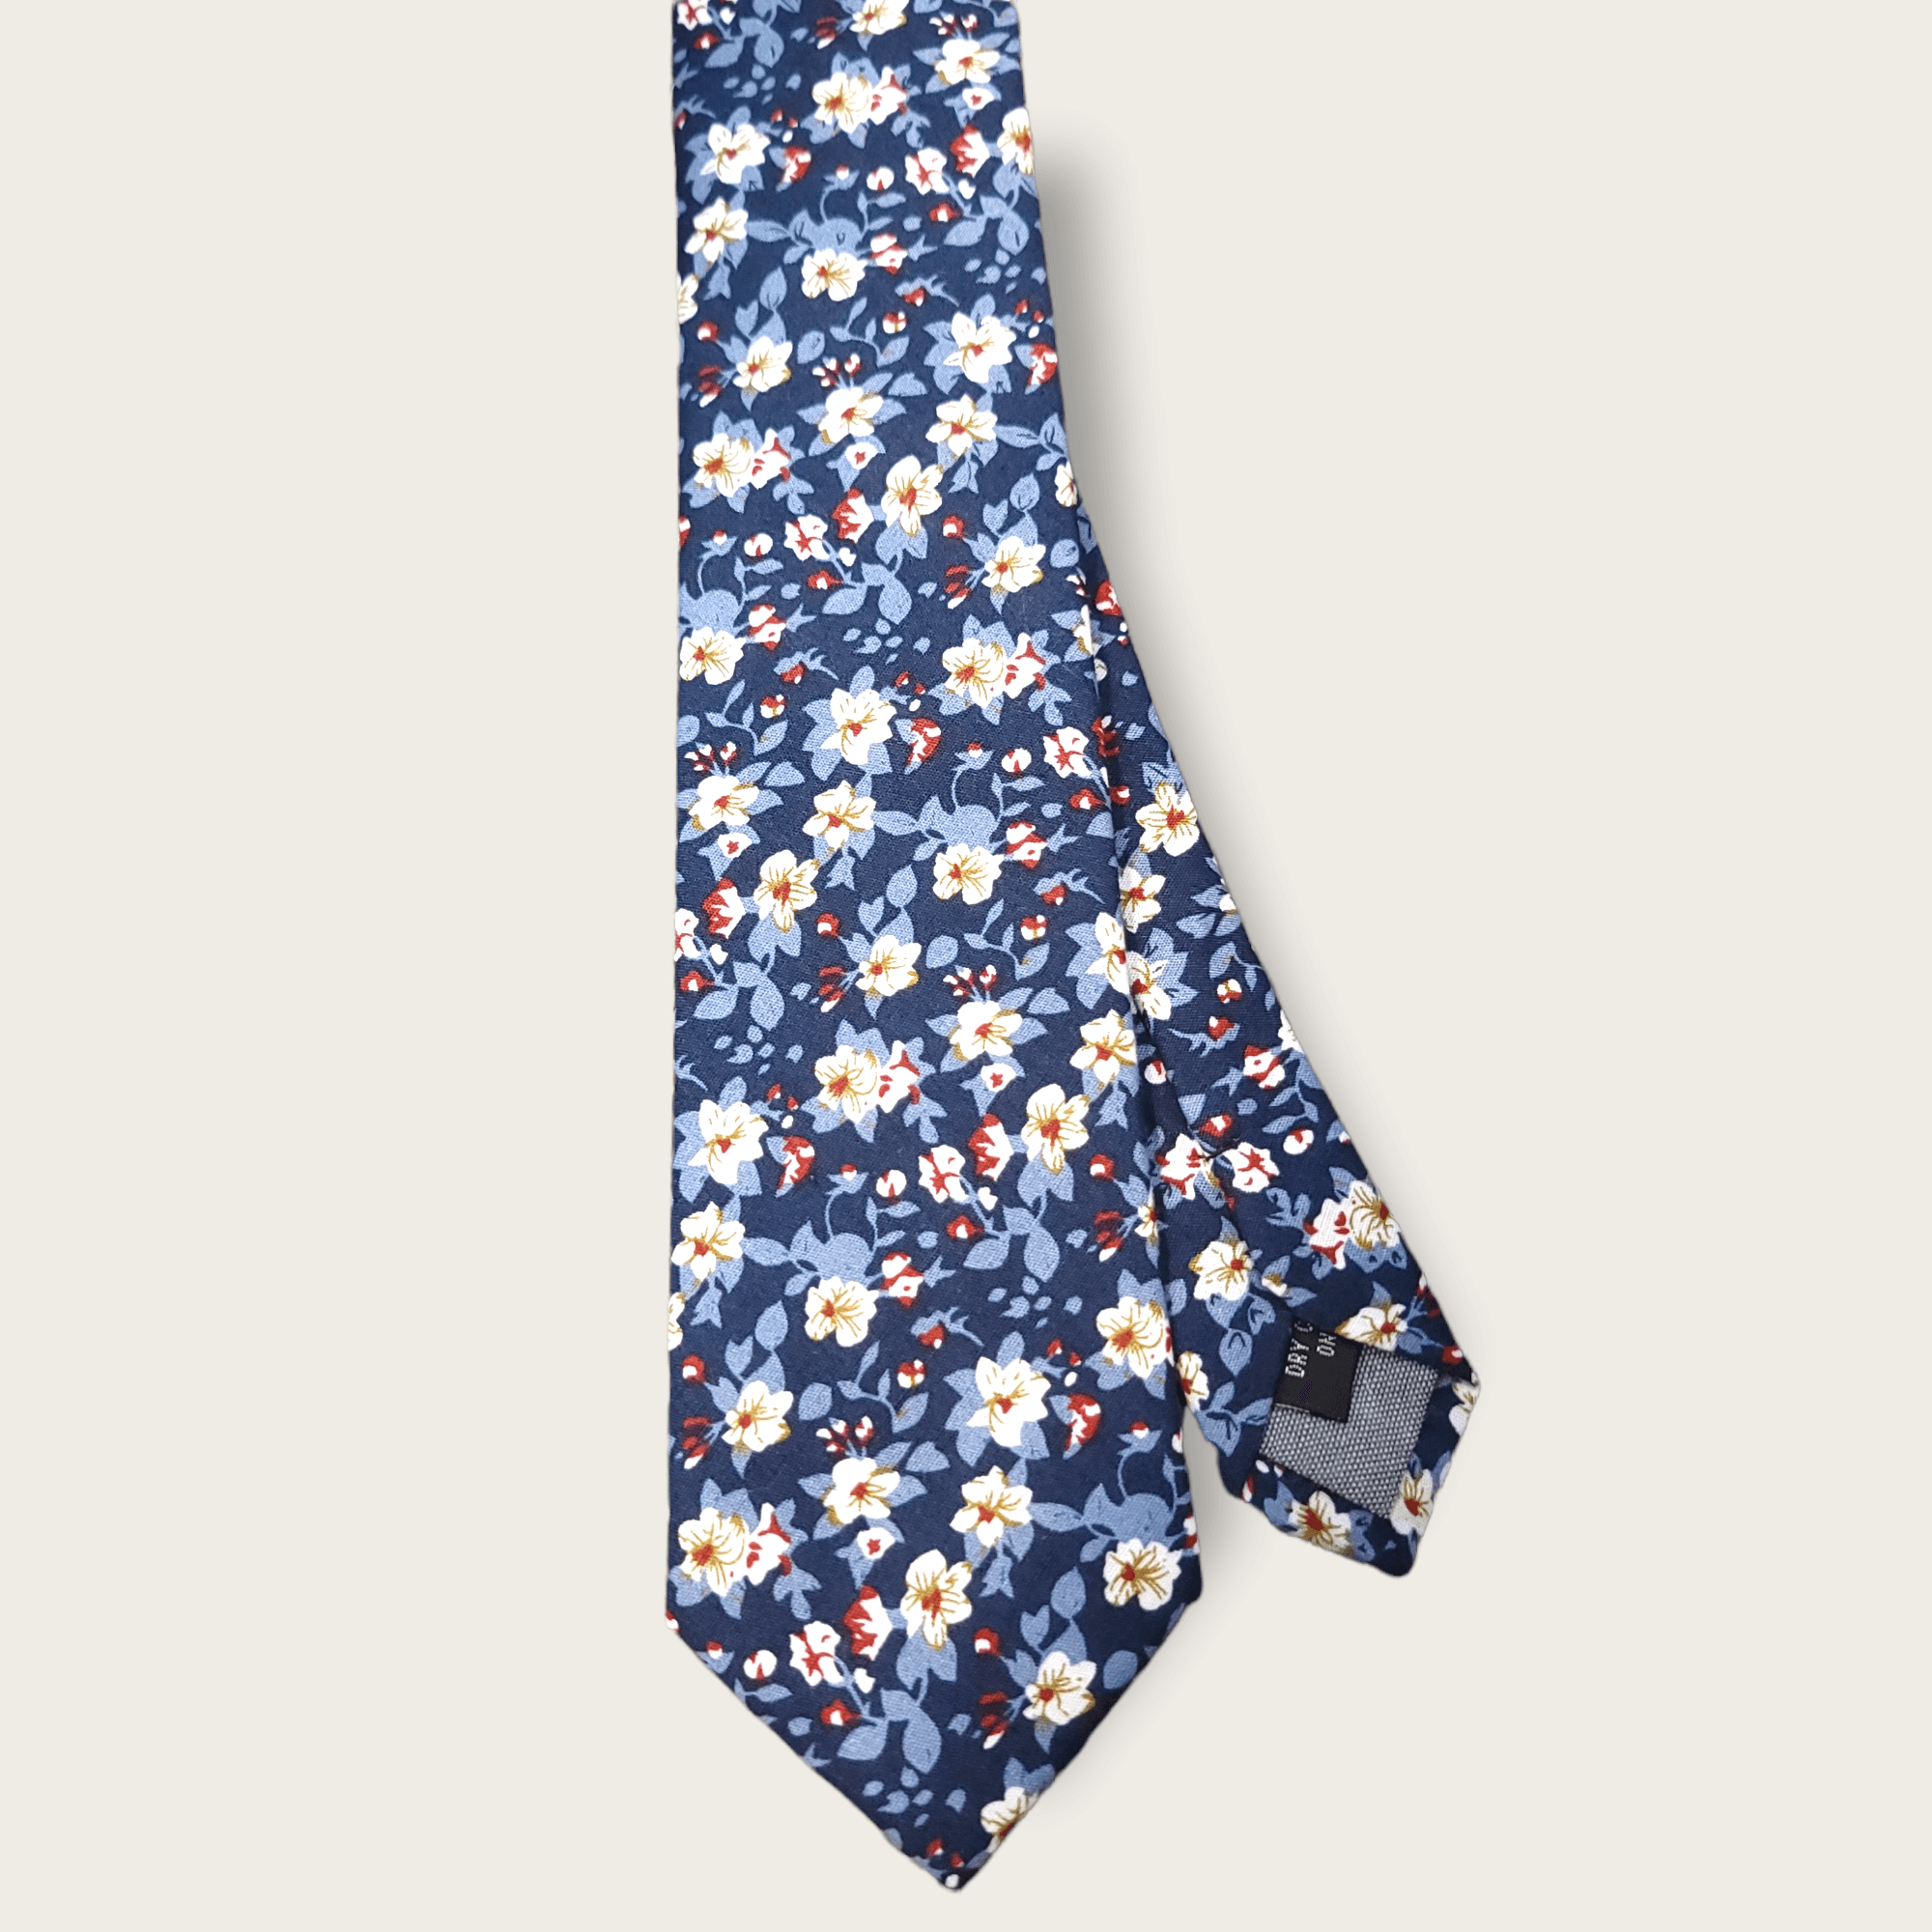 Indigo Blue Floral Slim Tie - STYLETIE